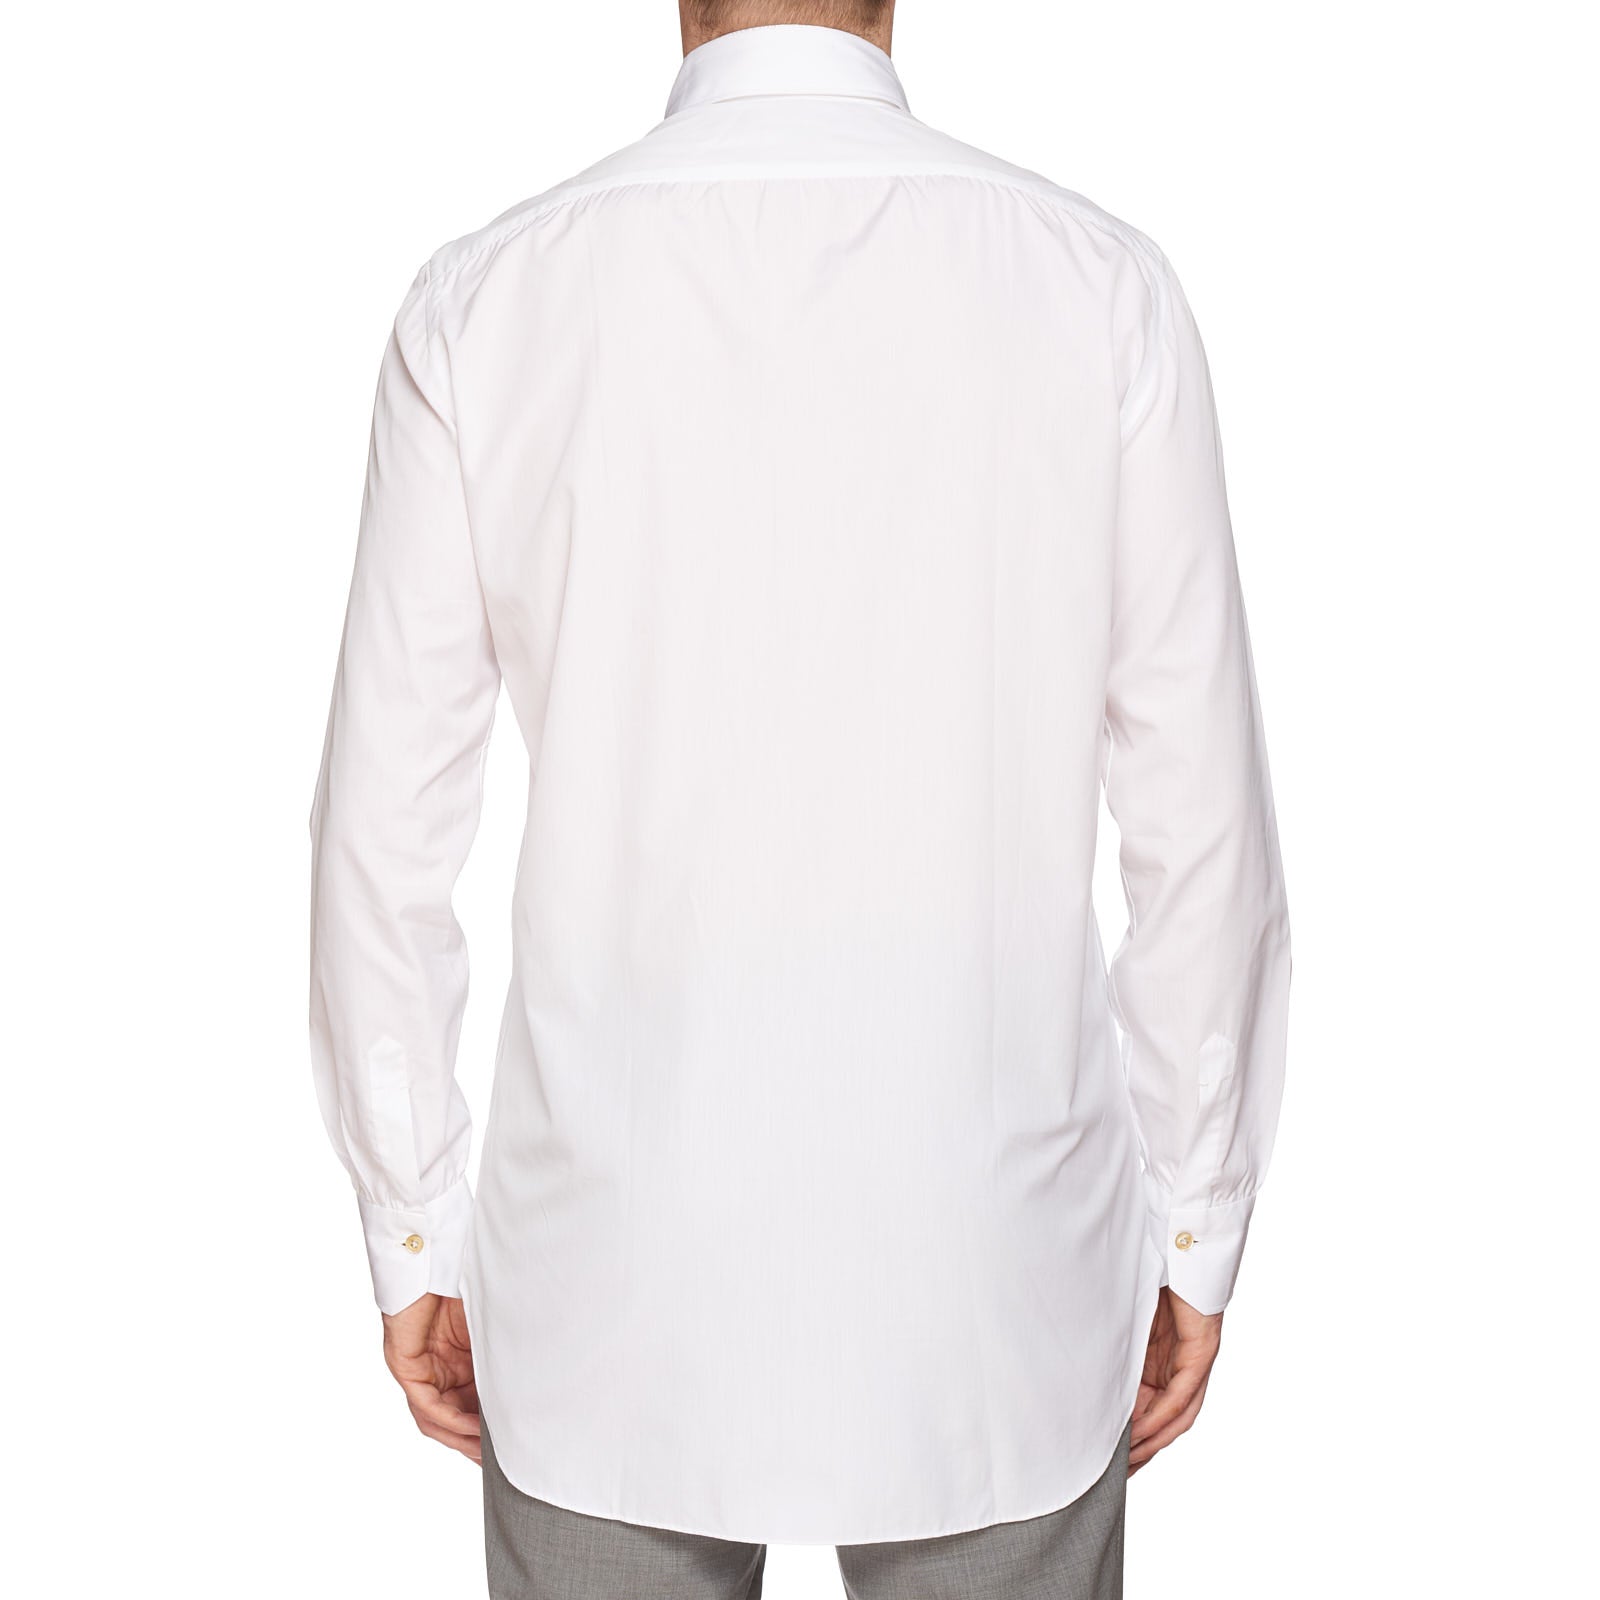 KITON Napoli Handmade Bespoke White Poplin Cotton Button-Down Shirt 39 NEW US 15.5 KITON